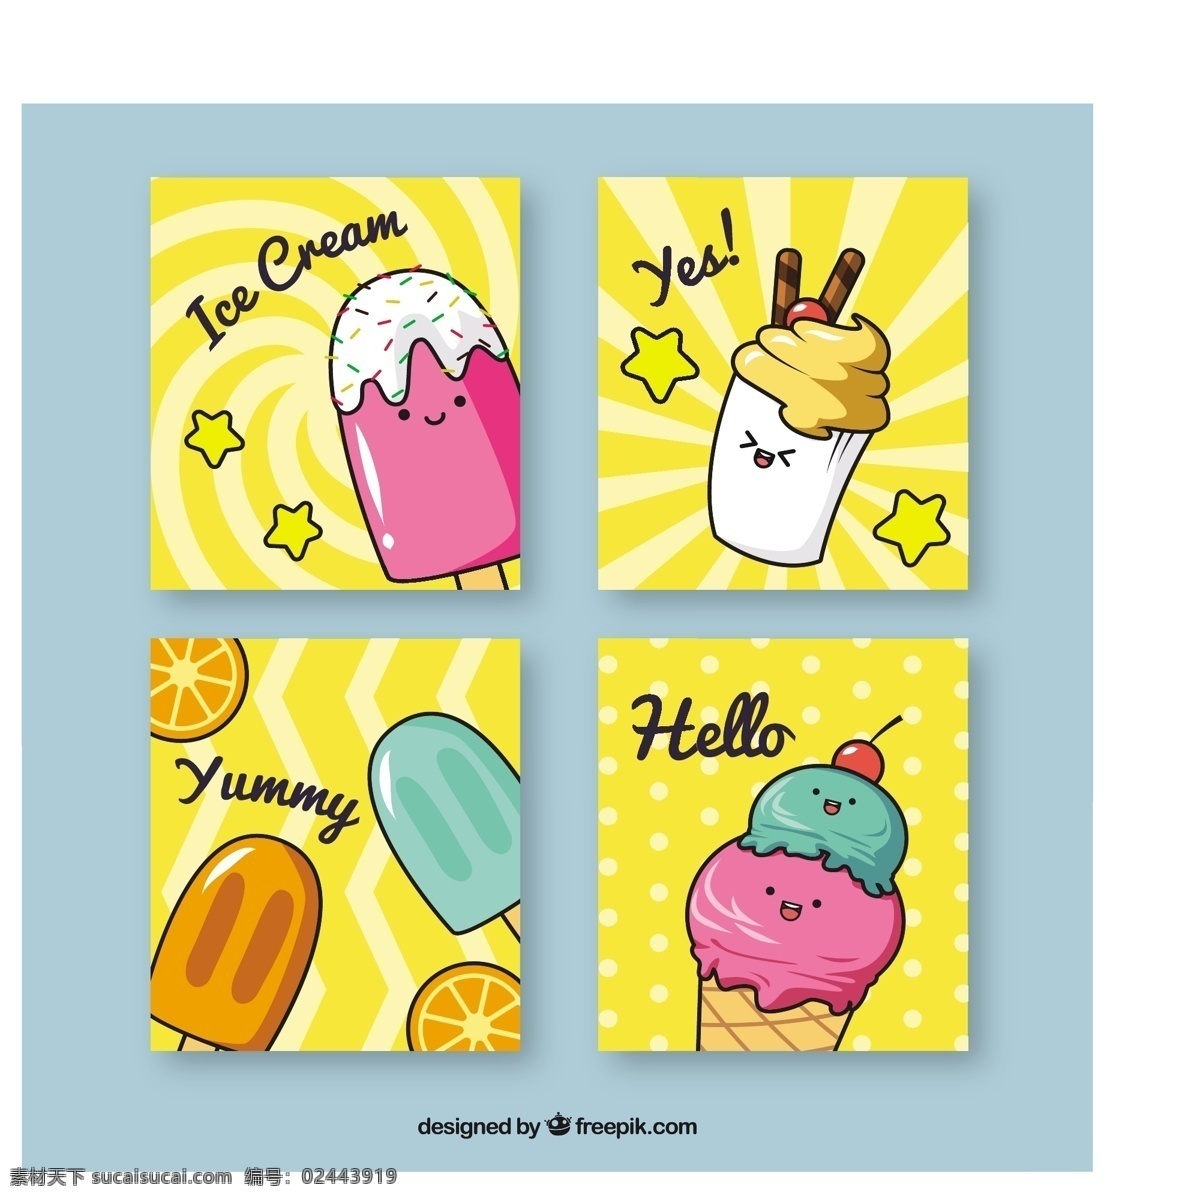 可爱 冰淇淋 卡 收藏 食物 卡片 夏天 模板 冰 甜 甜点 奶油 吃 季节 包装 收集 美味 集 味道 卡片模板